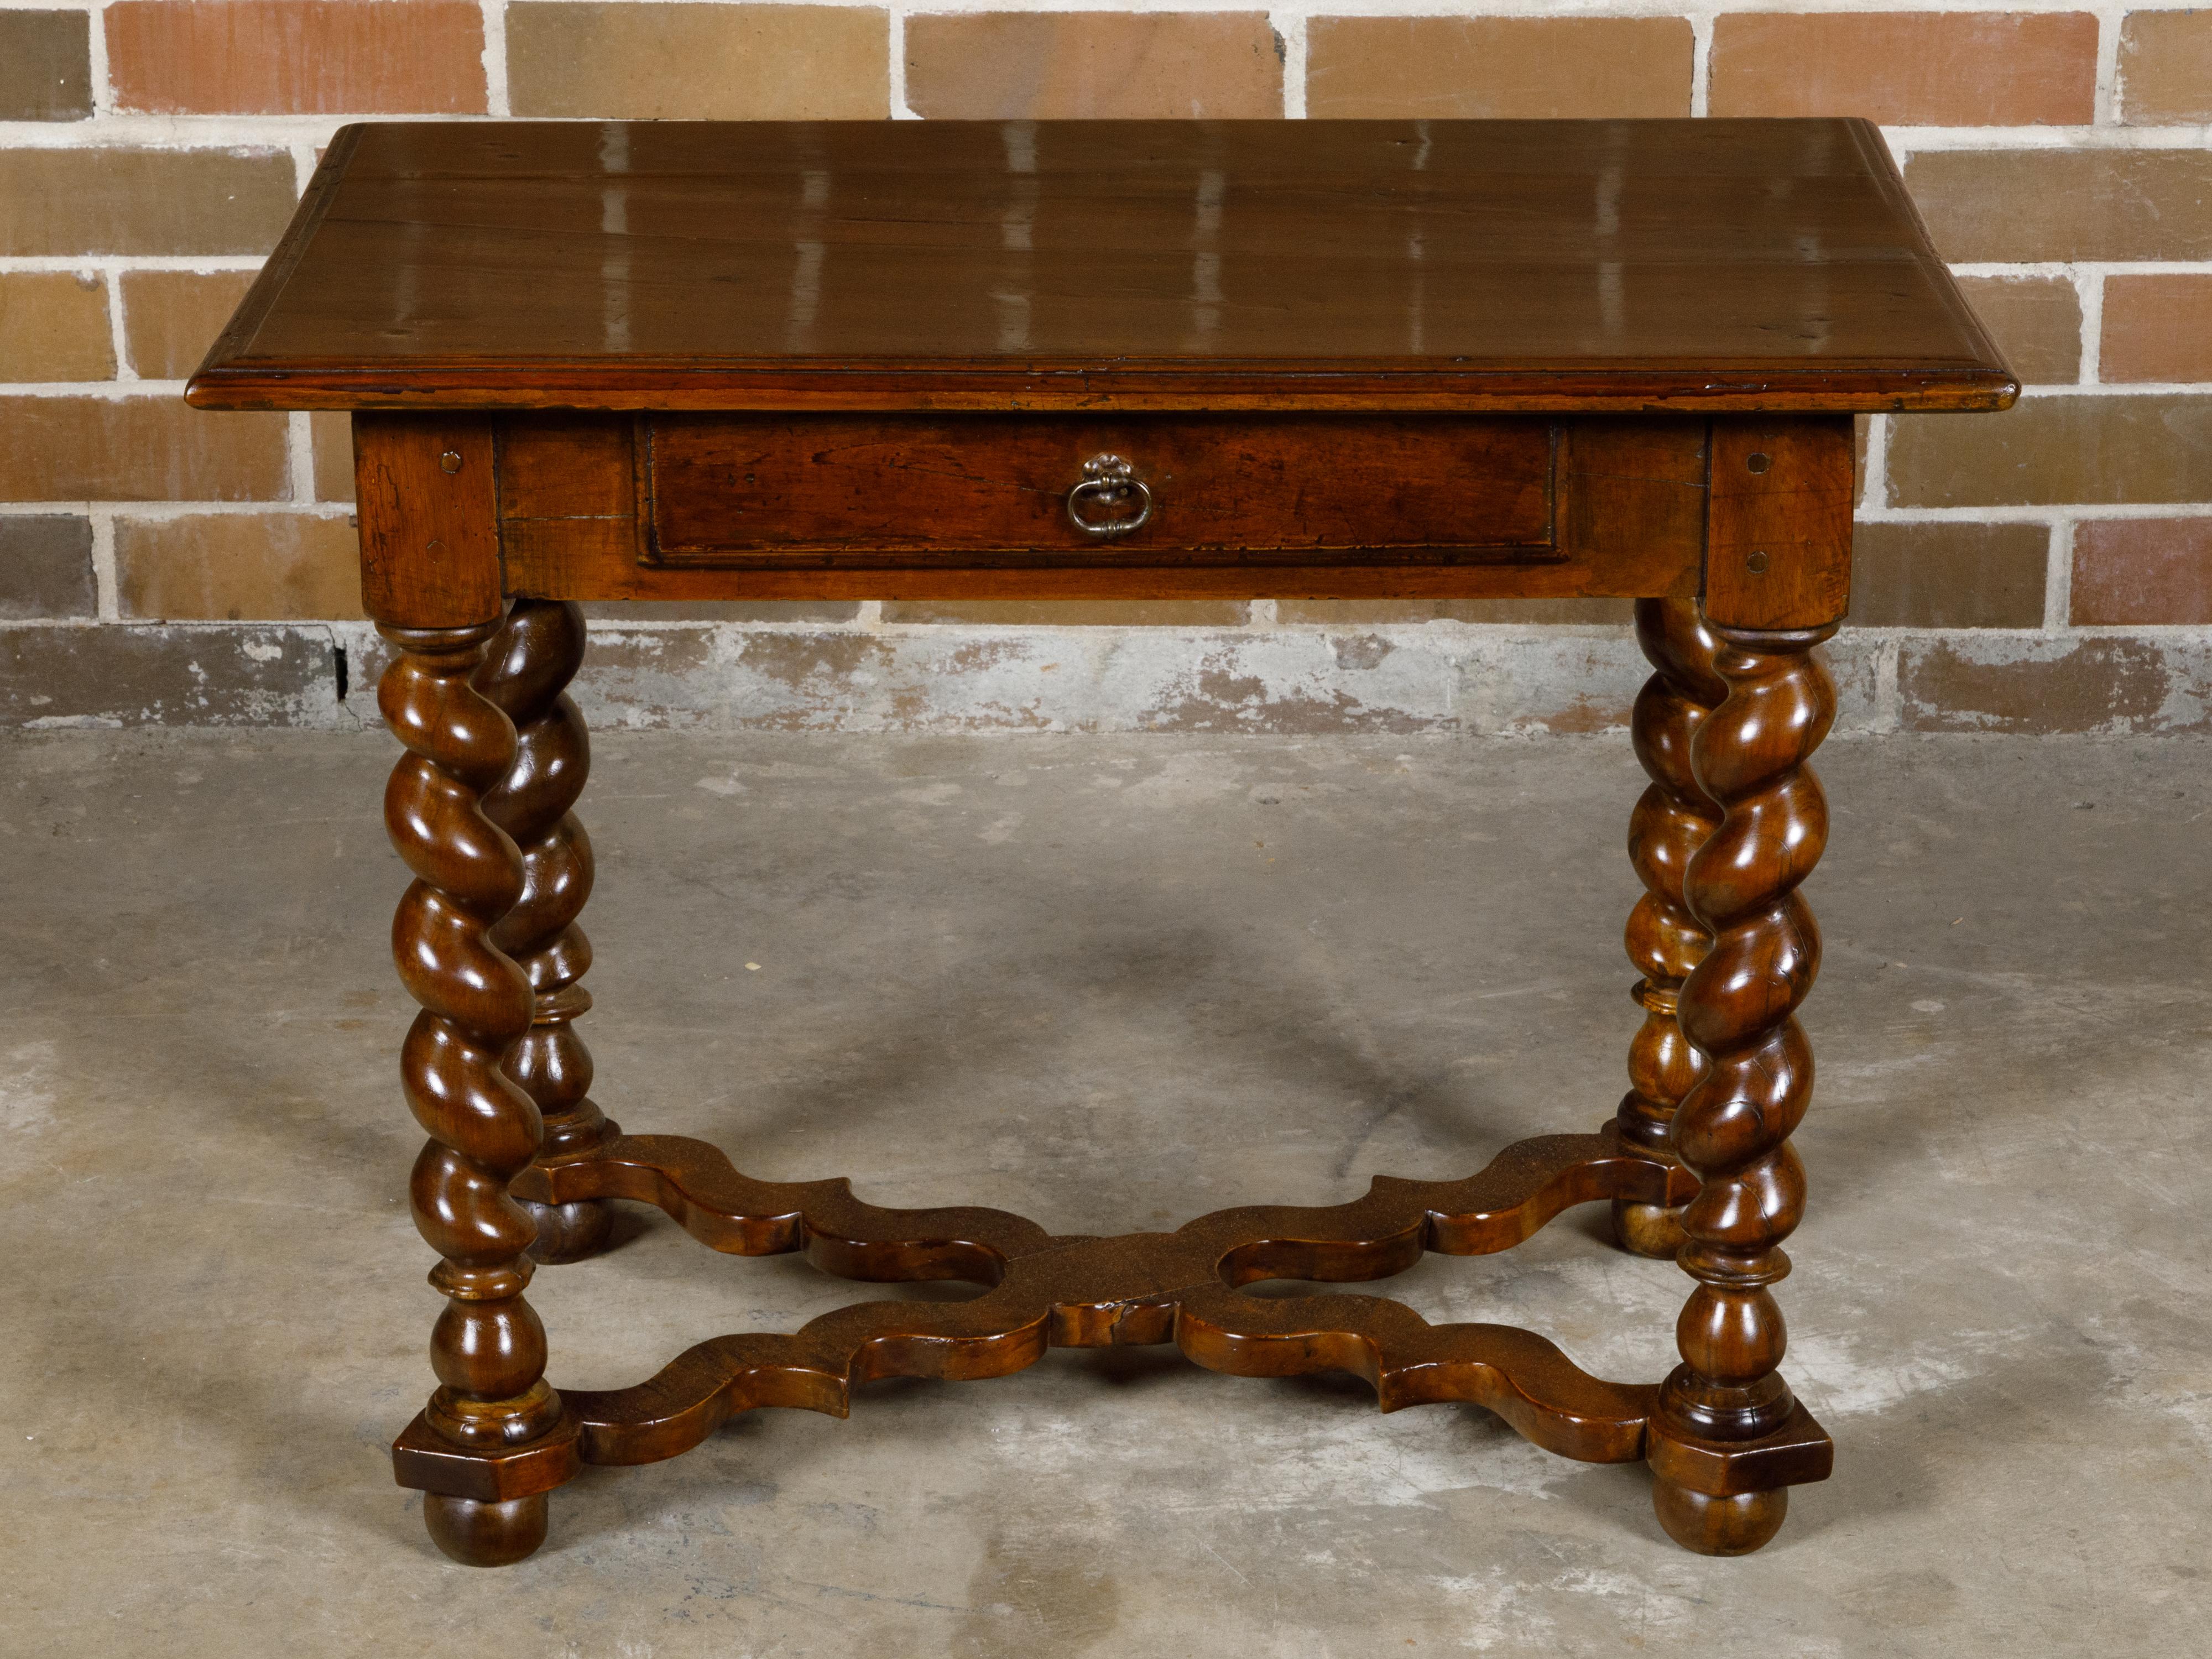 Table d'appoint en noyer de style Louis XIII du XIXe siècle, avec base en torsion d'orge, entretoise en X sculptée et tiroir unique. Cette exquise table d'appoint en noyer de style Louis XIII, datant du XIXe siècle, allie l'élégance intemporelle à